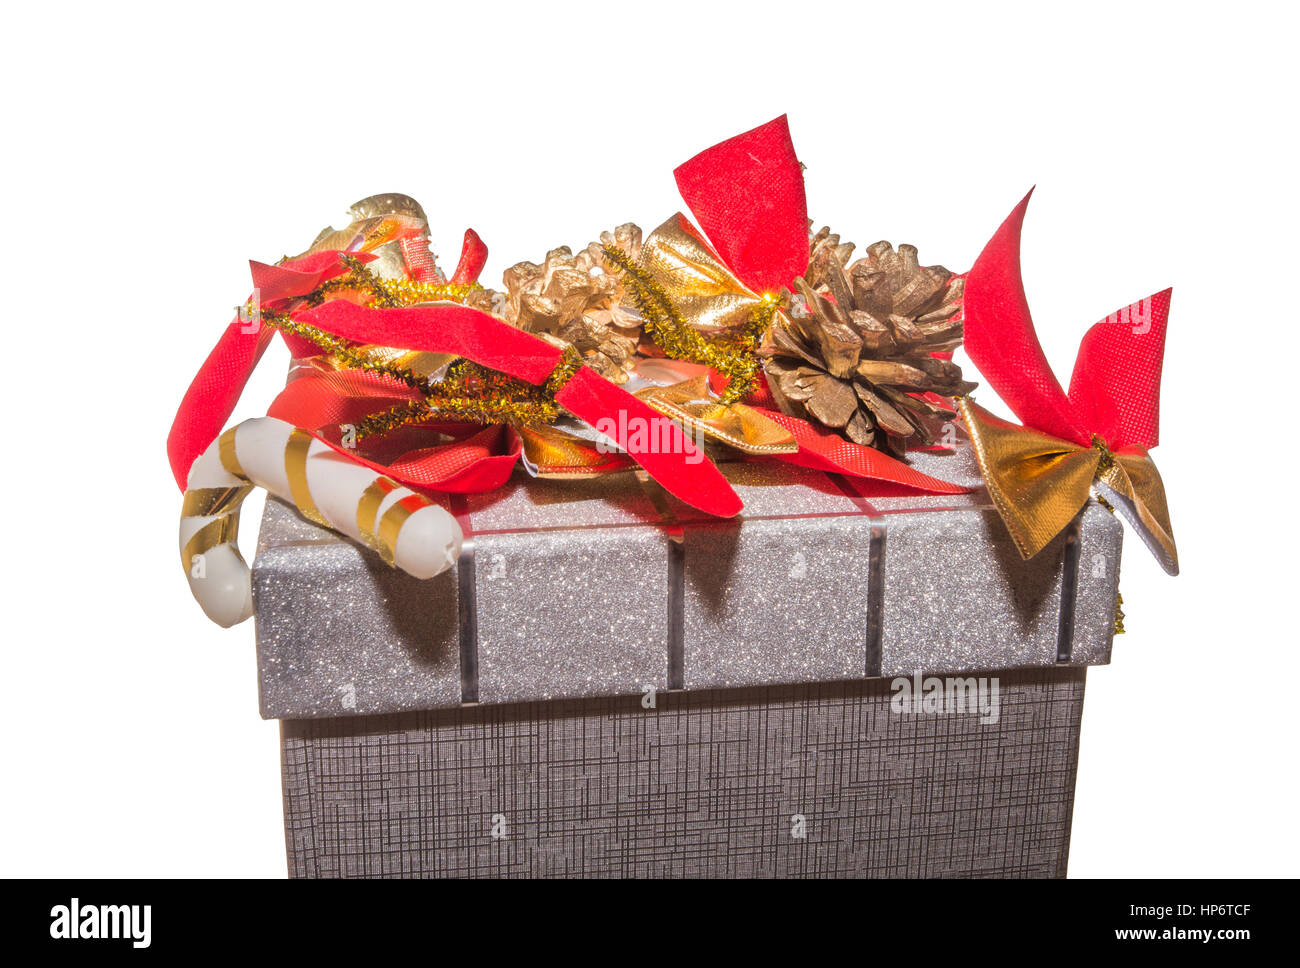 Natale decorato confezione regalo. Parte superiore della scatola regalo decorata con archi rossi e pigne. Decorate confezione regalo isolato su sfondo bianco. Foto Stock